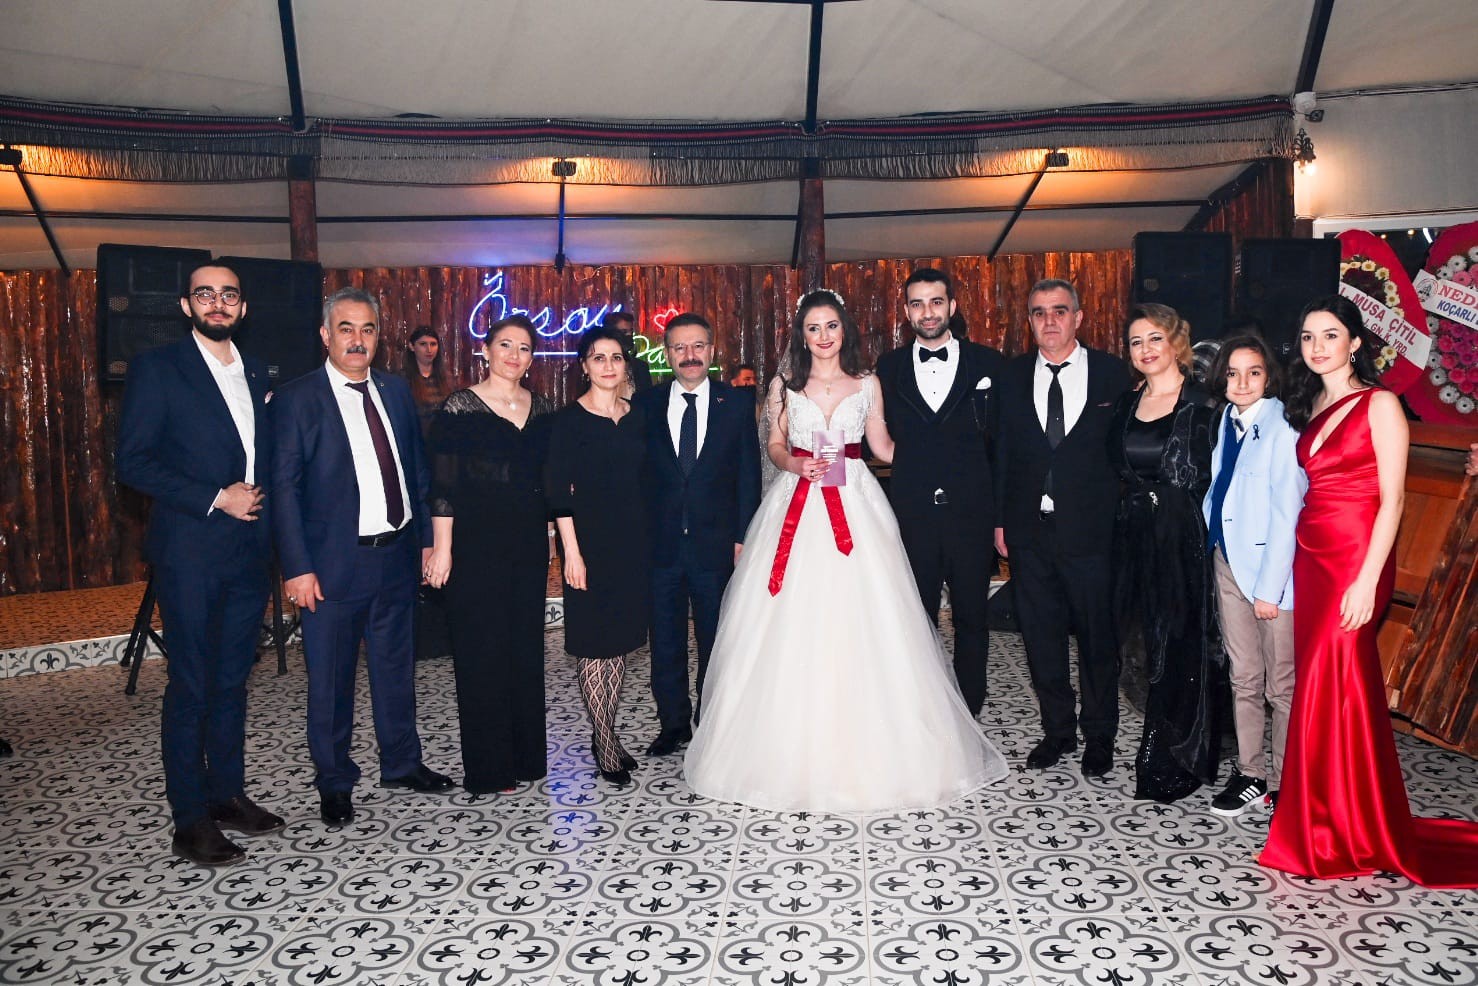 Vali Aksoy nikah şahidi oldu, mutluluklar diledi #aydin